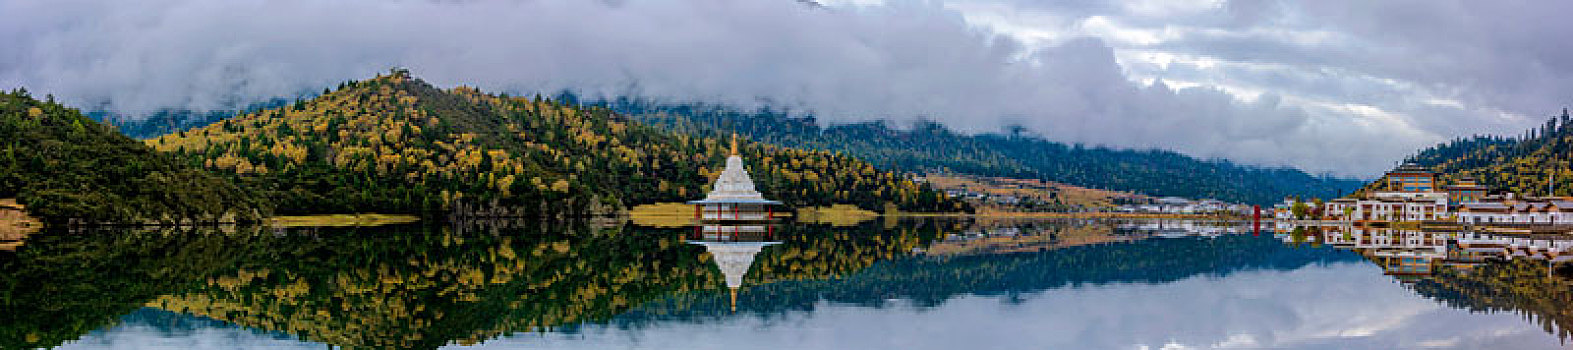 中国西藏林芝鲁朗扎塘鲁措湖全景风光